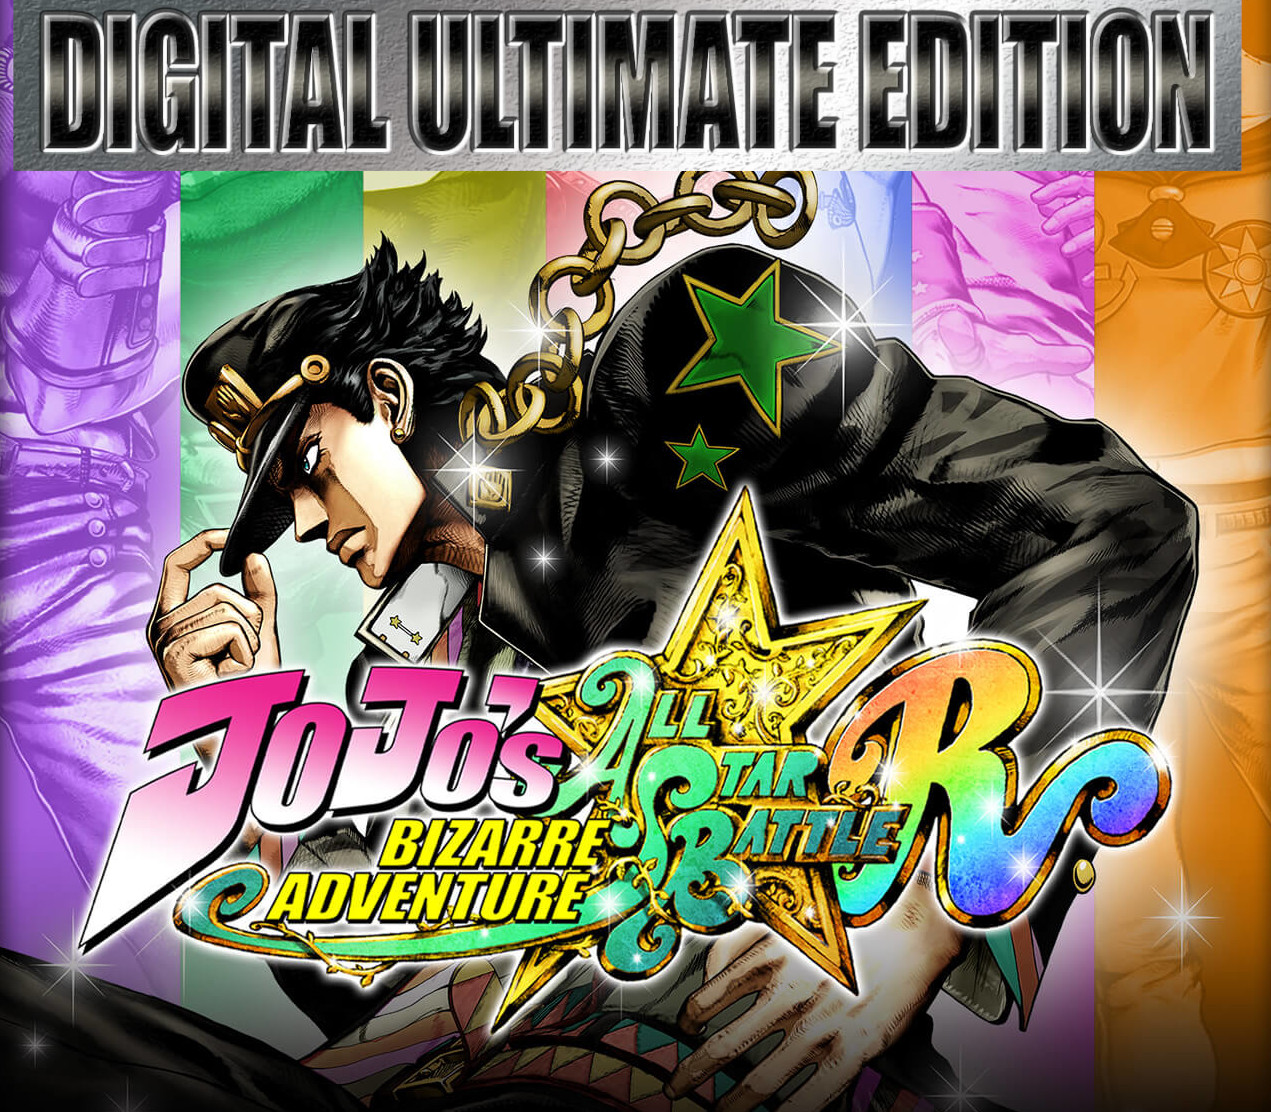 JoJo's Bizarre Adventure: All-Star Battle R Ultimate Edition, PC Steam Game